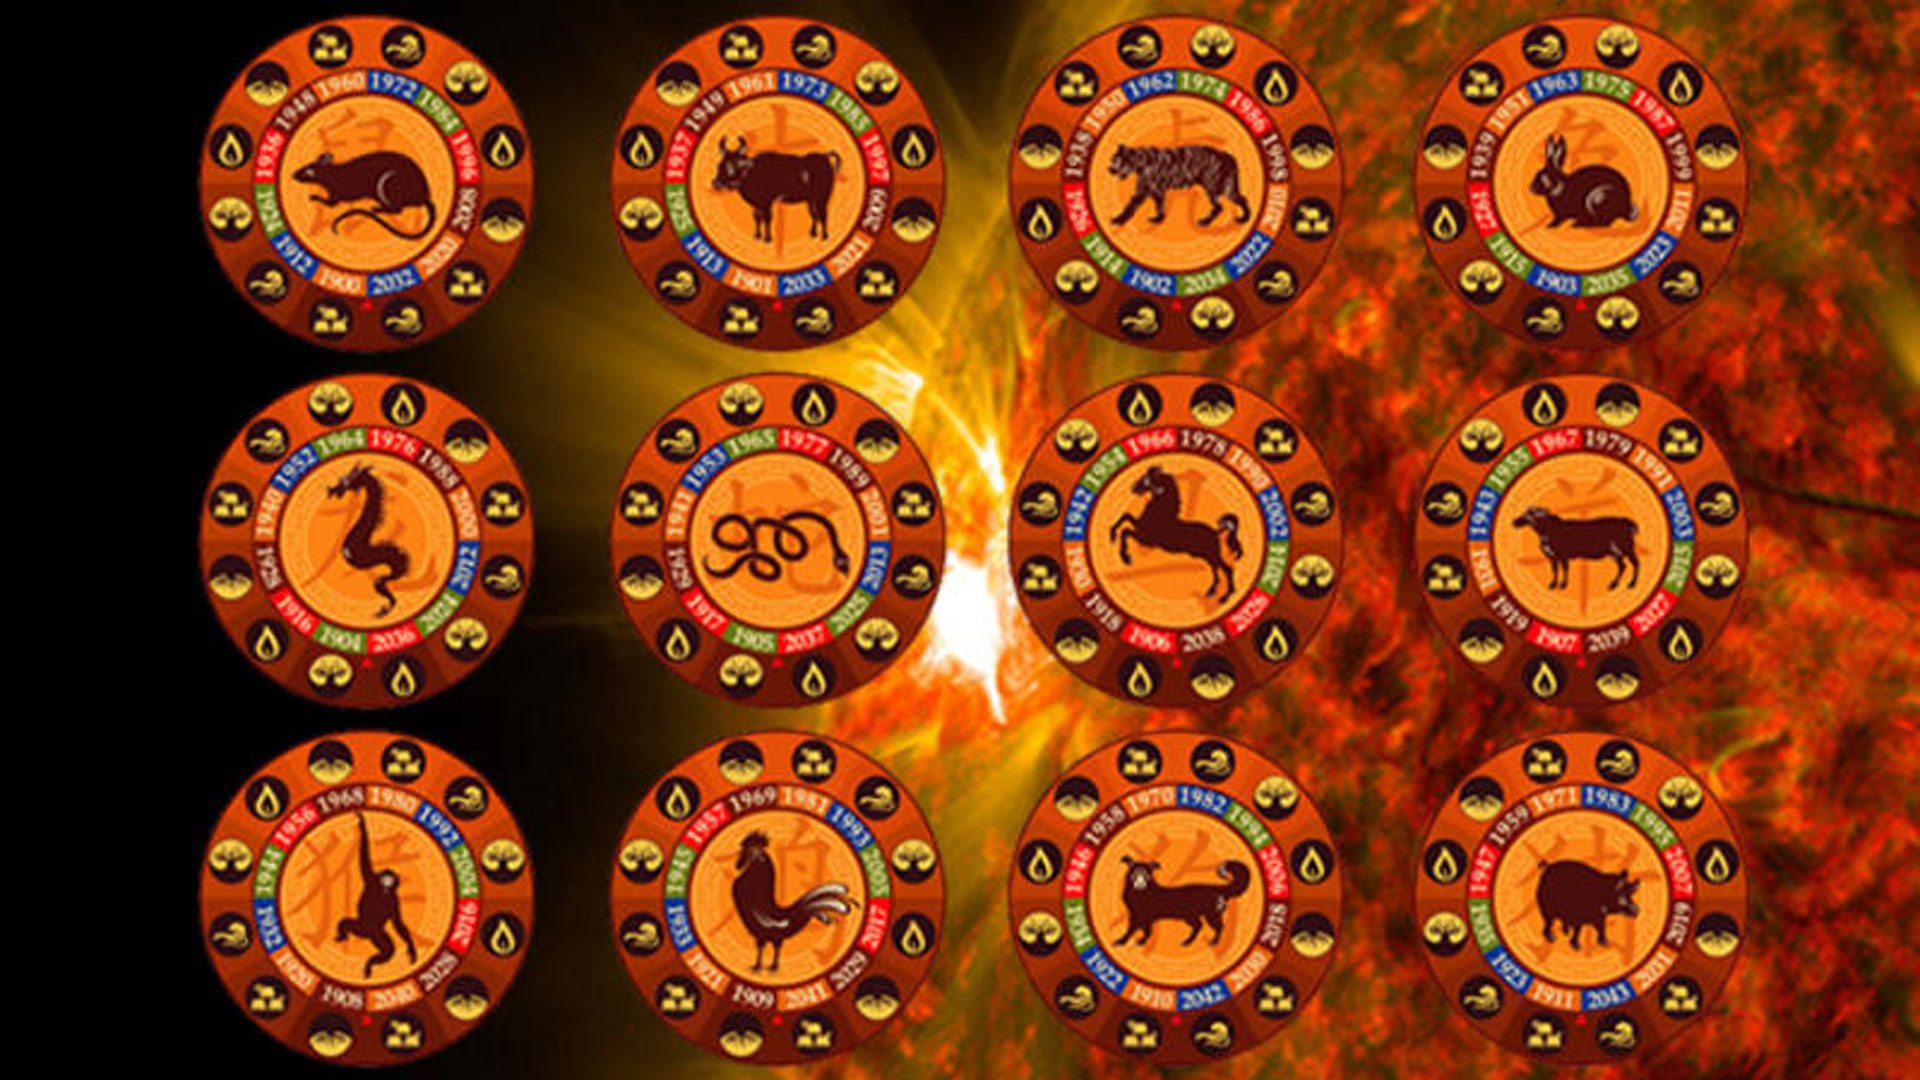 Horóscopo chino: conoce los detalles del zodiaco asiático